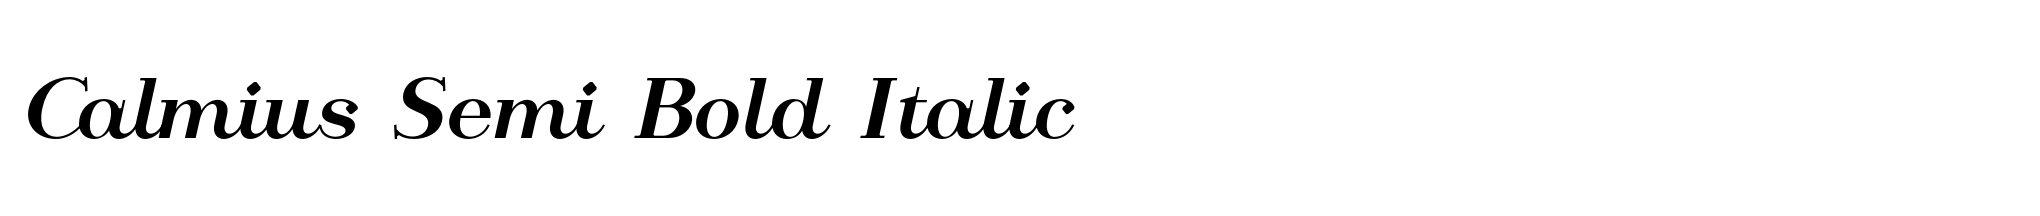 Calmius Semi Bold Italic image